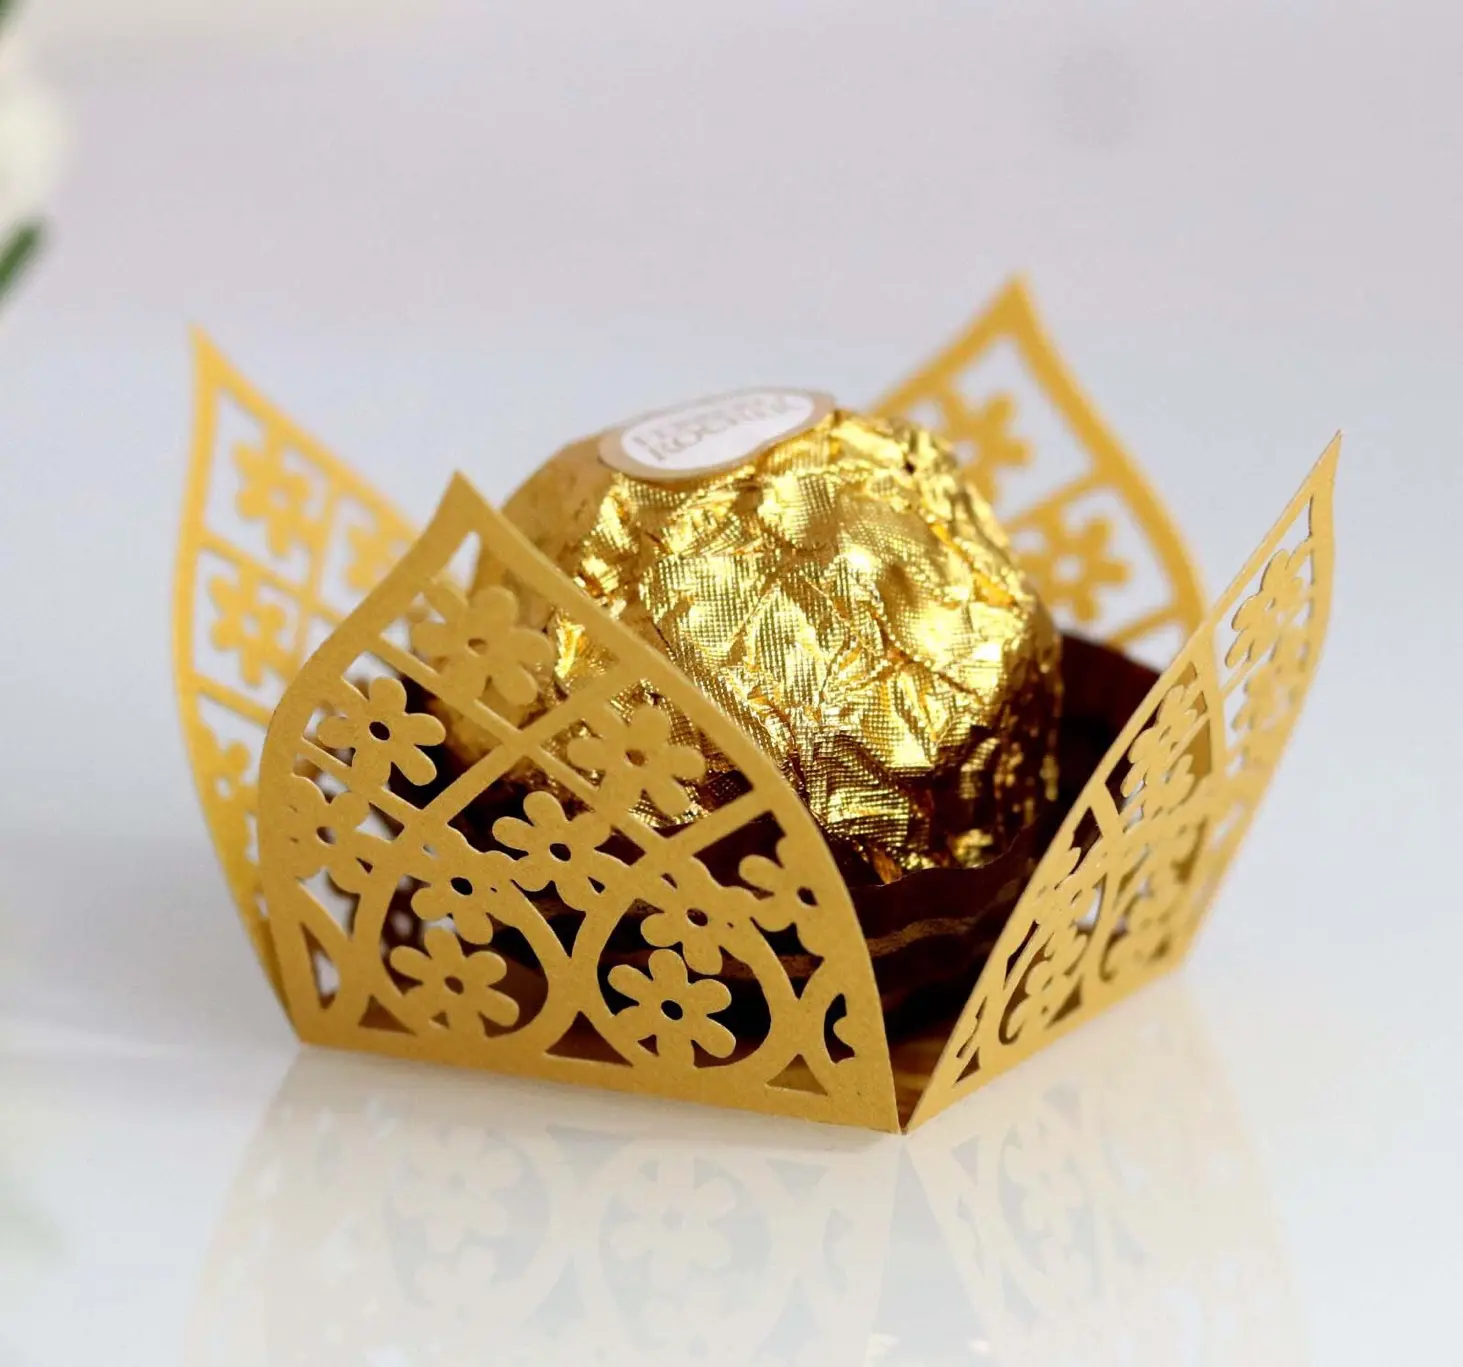 Envoltorio de Chocolate mexicano con corte láser, caja de Chocolate dorada, decoraciones para Tartas, Chocolate